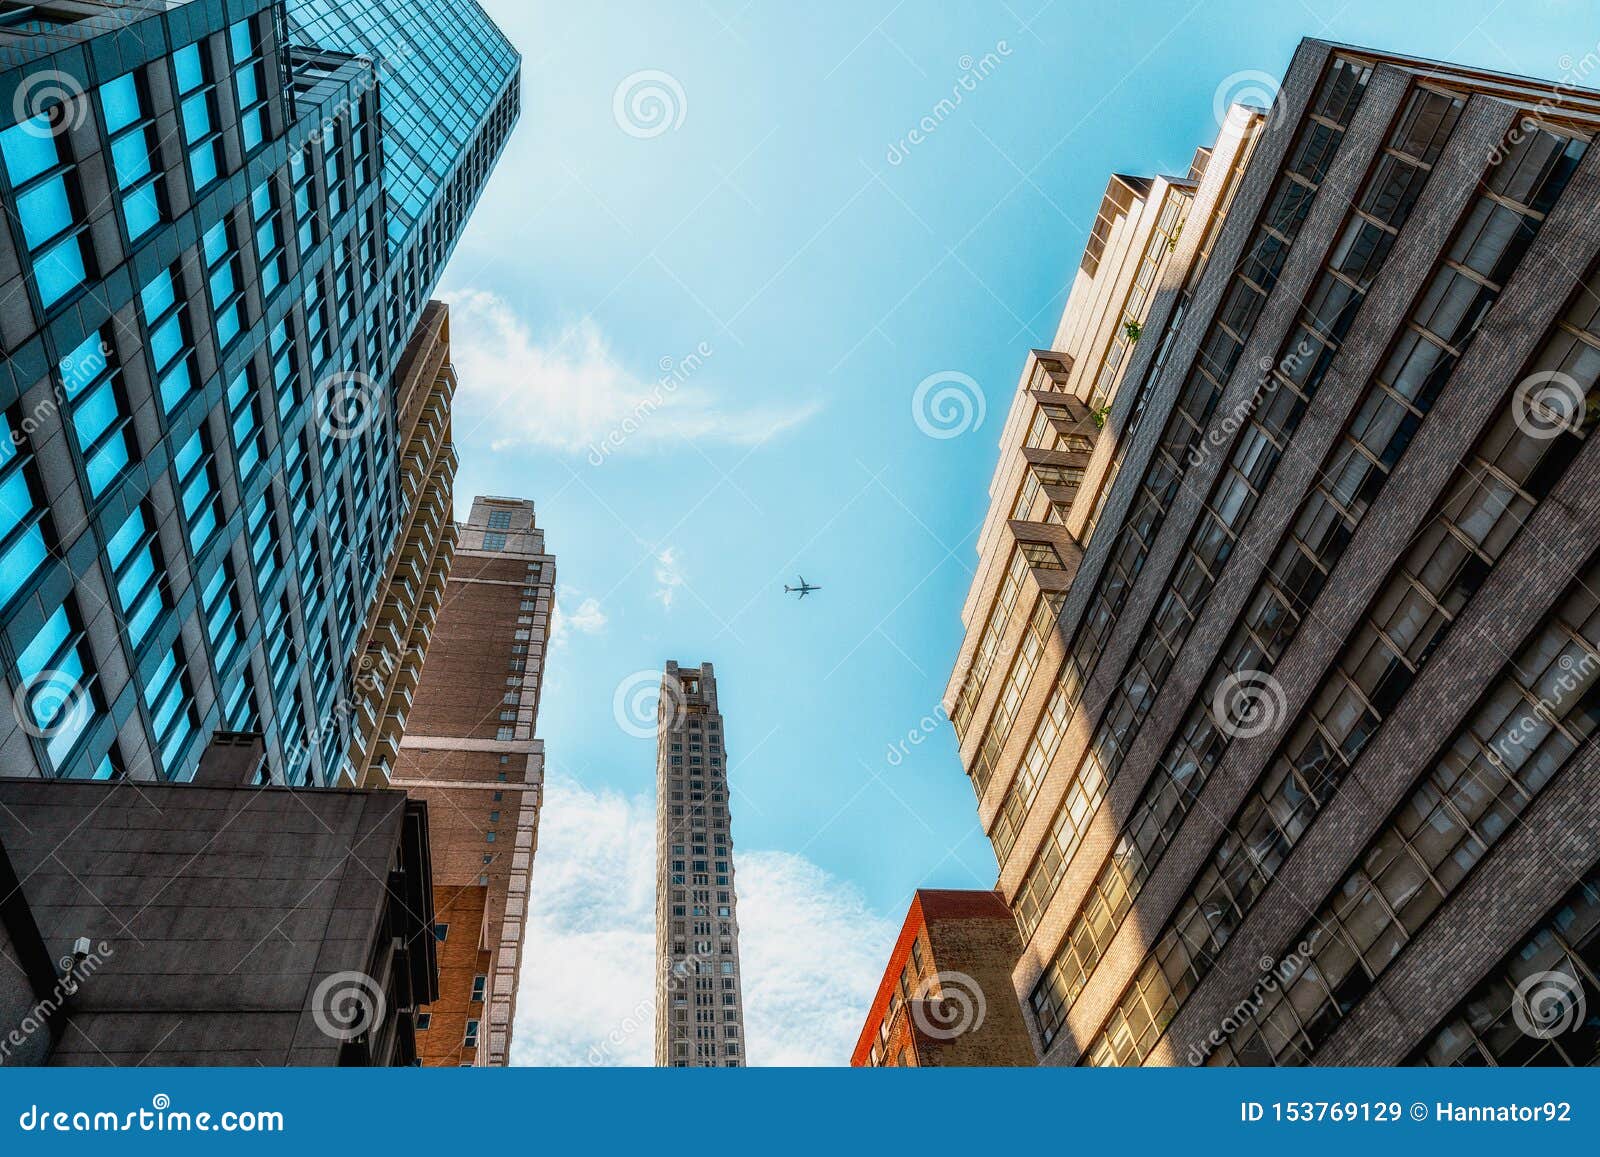 Nếu bạn là một người yêu kiến trúc, thì không thể bỏ qua những công trình ngắm từ trên cao tại thành phố New York. Hình ảnh kiến trúc New York đẹp lung linh sẽ giúp bạn khám phá những chi tiết tinh xảo của lối kiến trúc độc đáo của thành phố này.